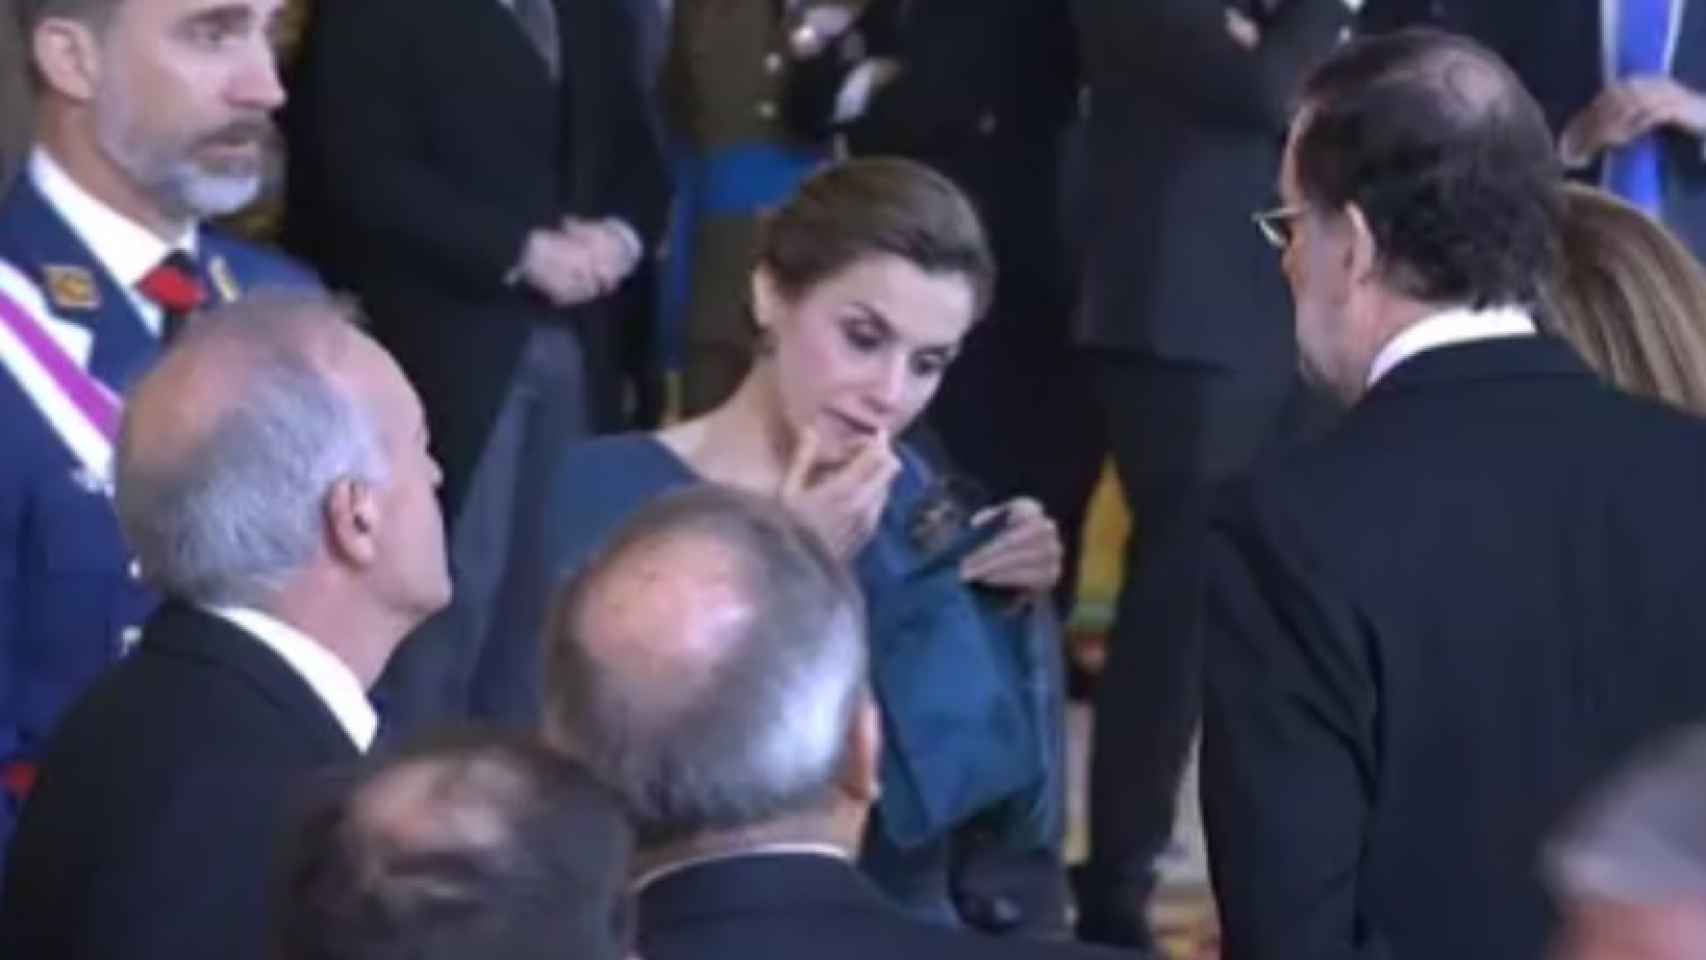 Letizia maquillándose delante del anterior presidente del Gobierno Mariano Rajoy